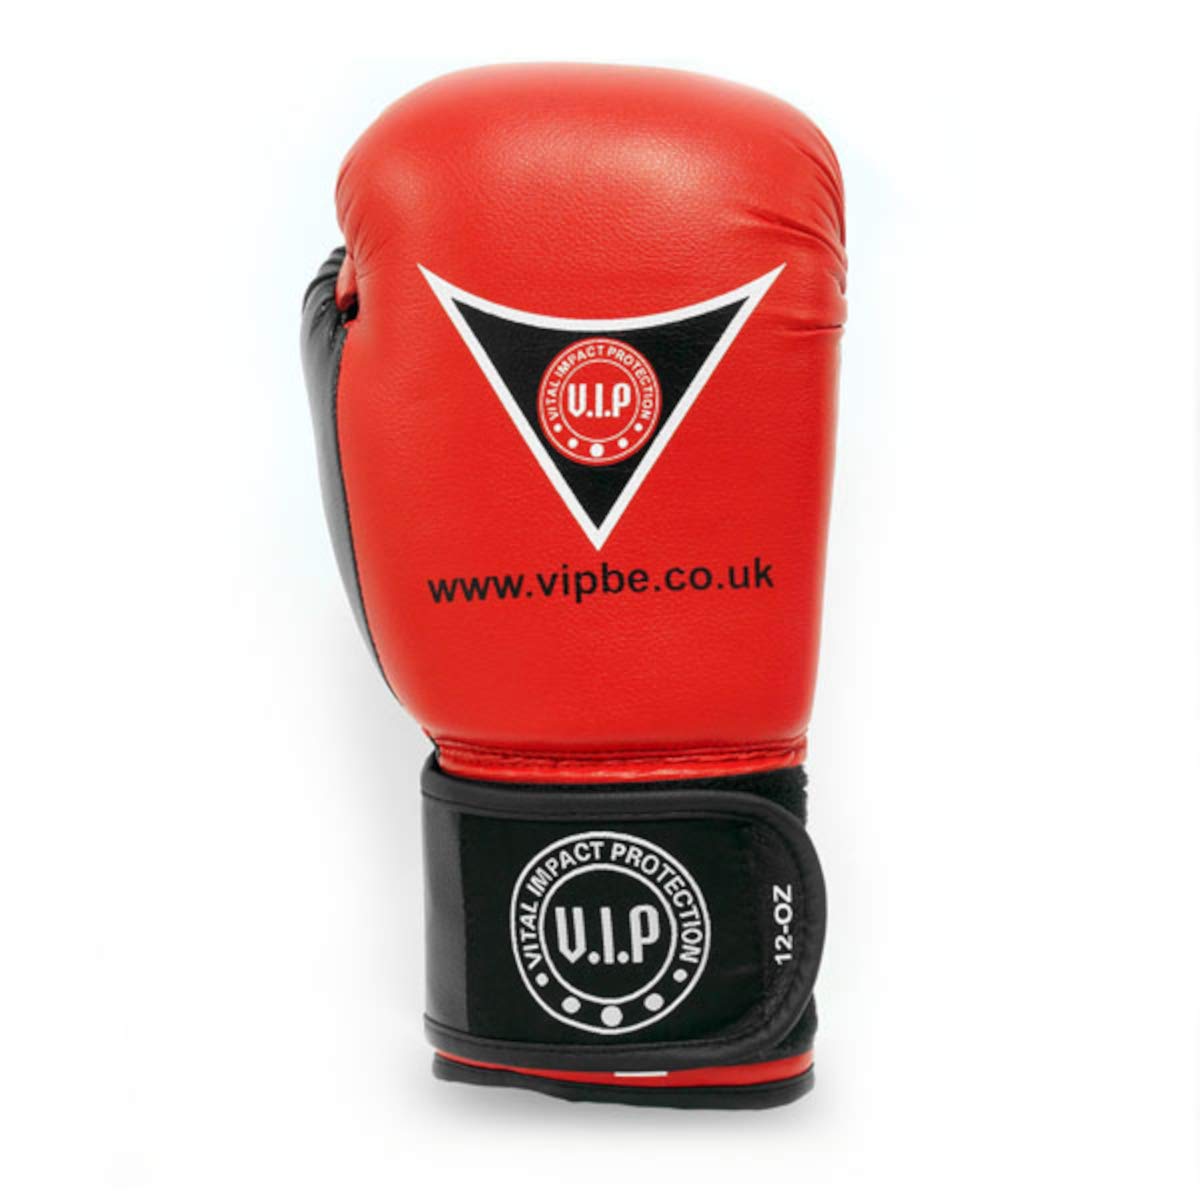 VIP Unisex entworfen und verwendet von Profis Reihe wurde von ehemaligen europäischen Cha-Boxhandschuhen entworfen, Rot, 284 g UK